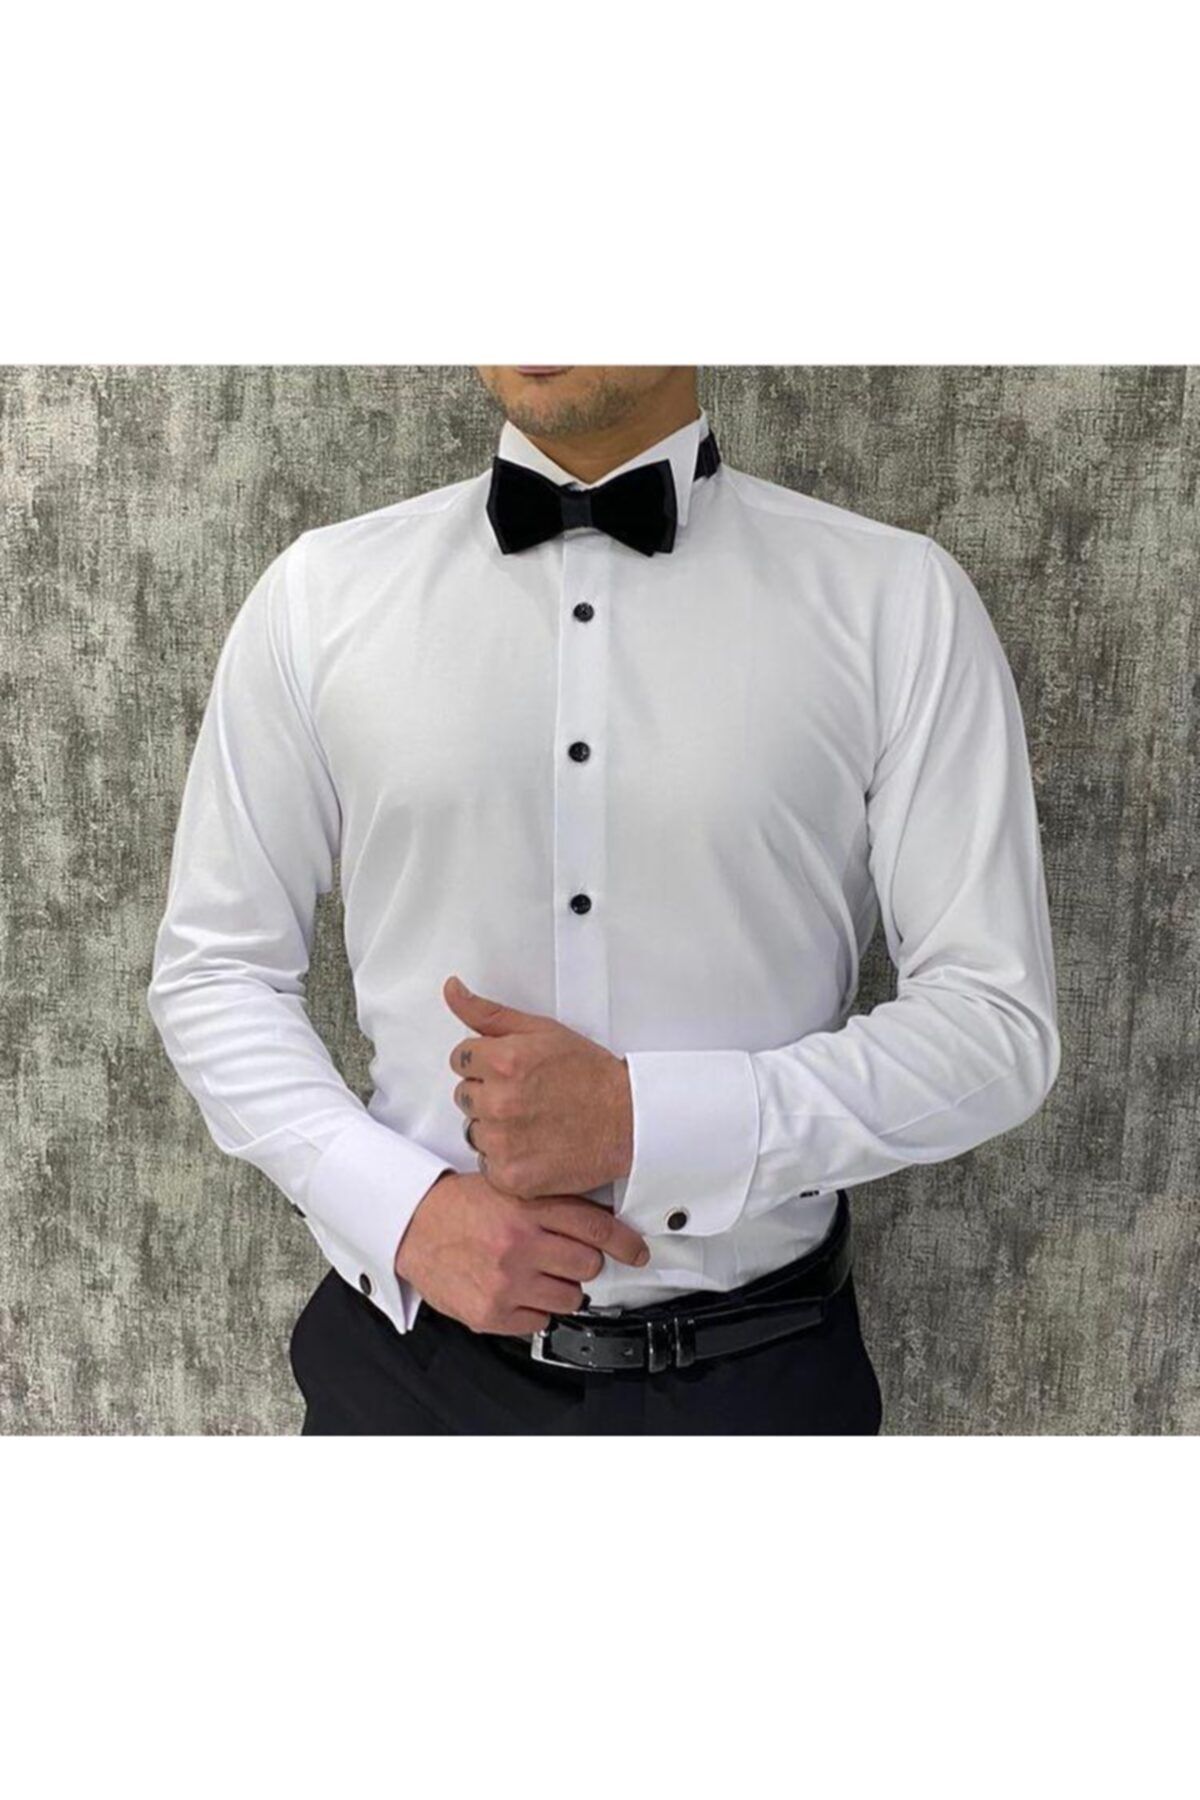 Terziayhan Damatlık Gömlek Slim Fit Beyaz Ata Yaka Gömlek Kol Düğme Hediyeli